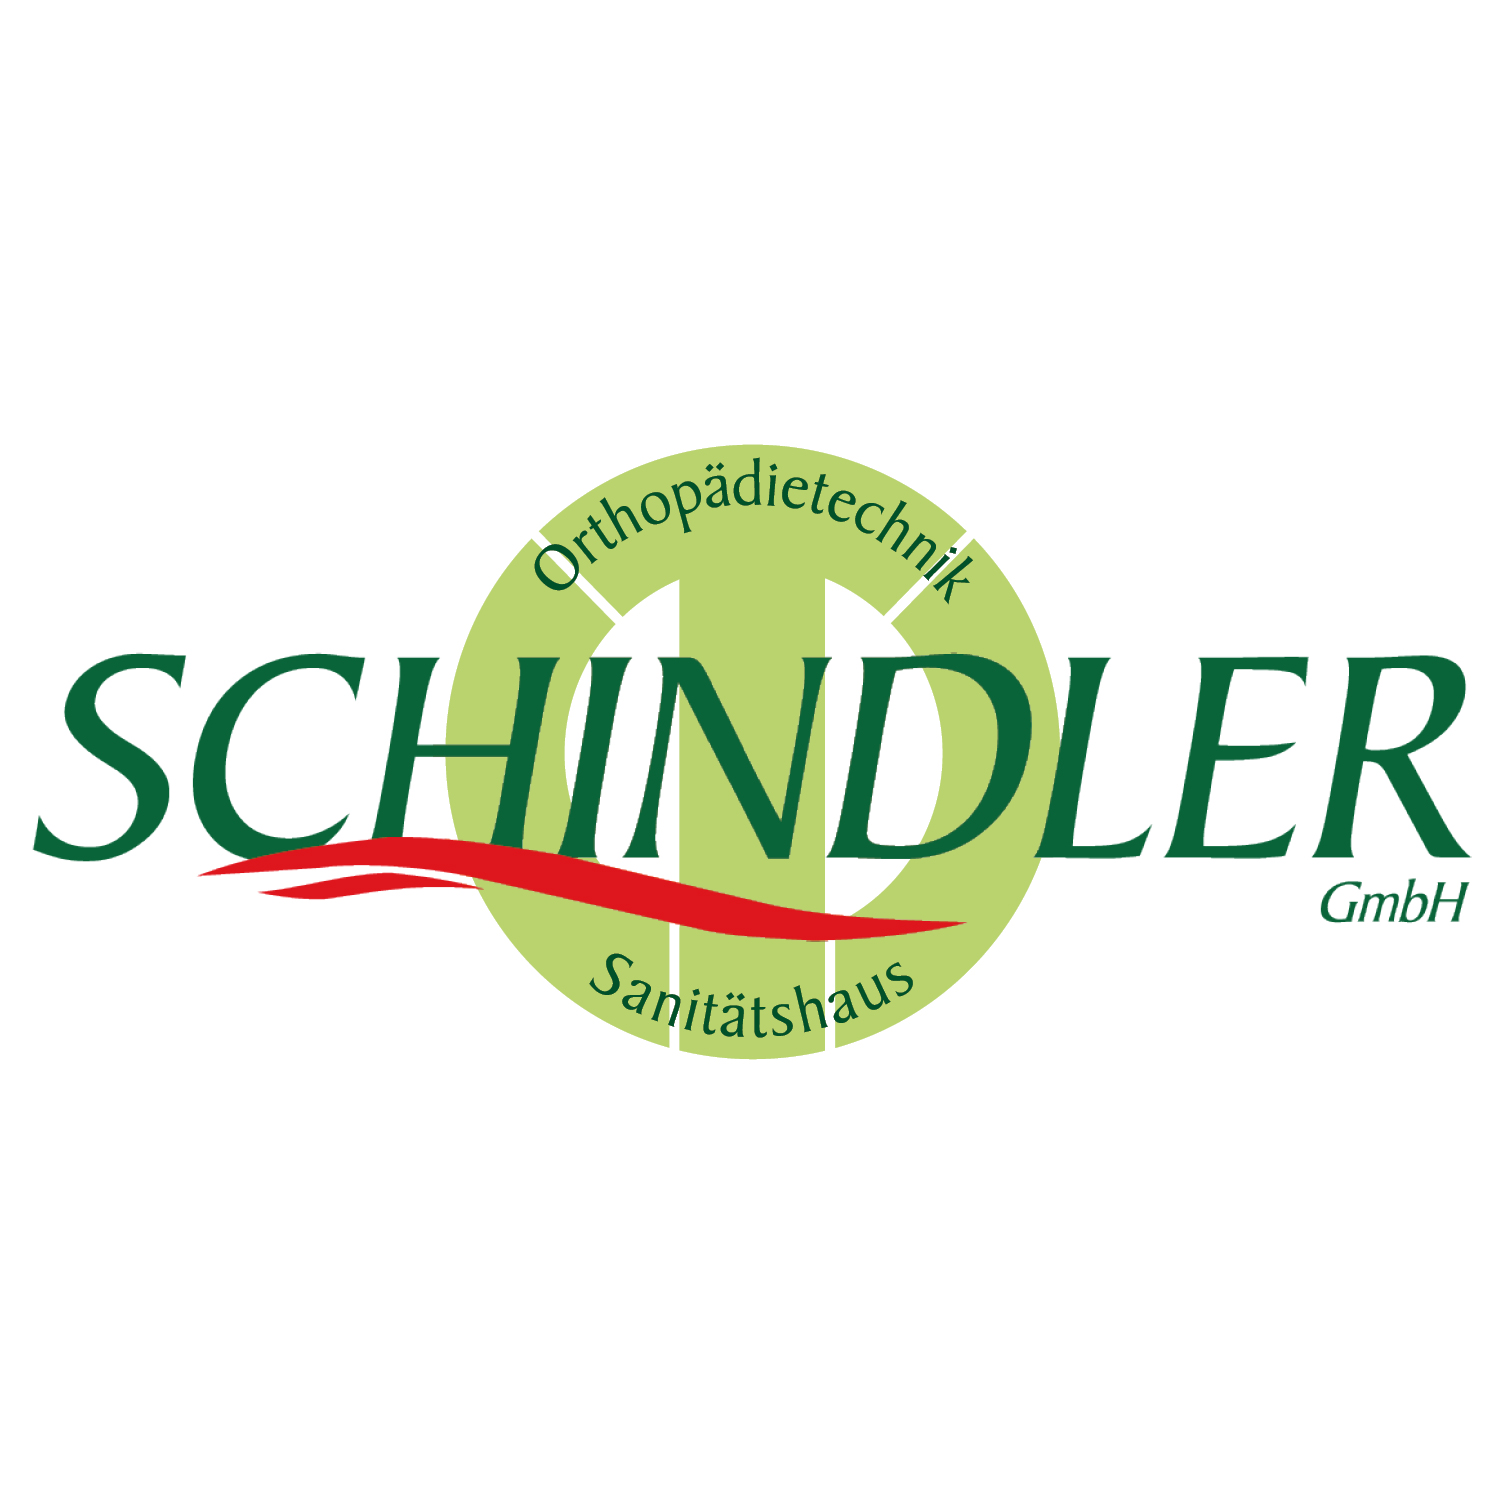 Sanitätshaus Schindler GmbH Logo